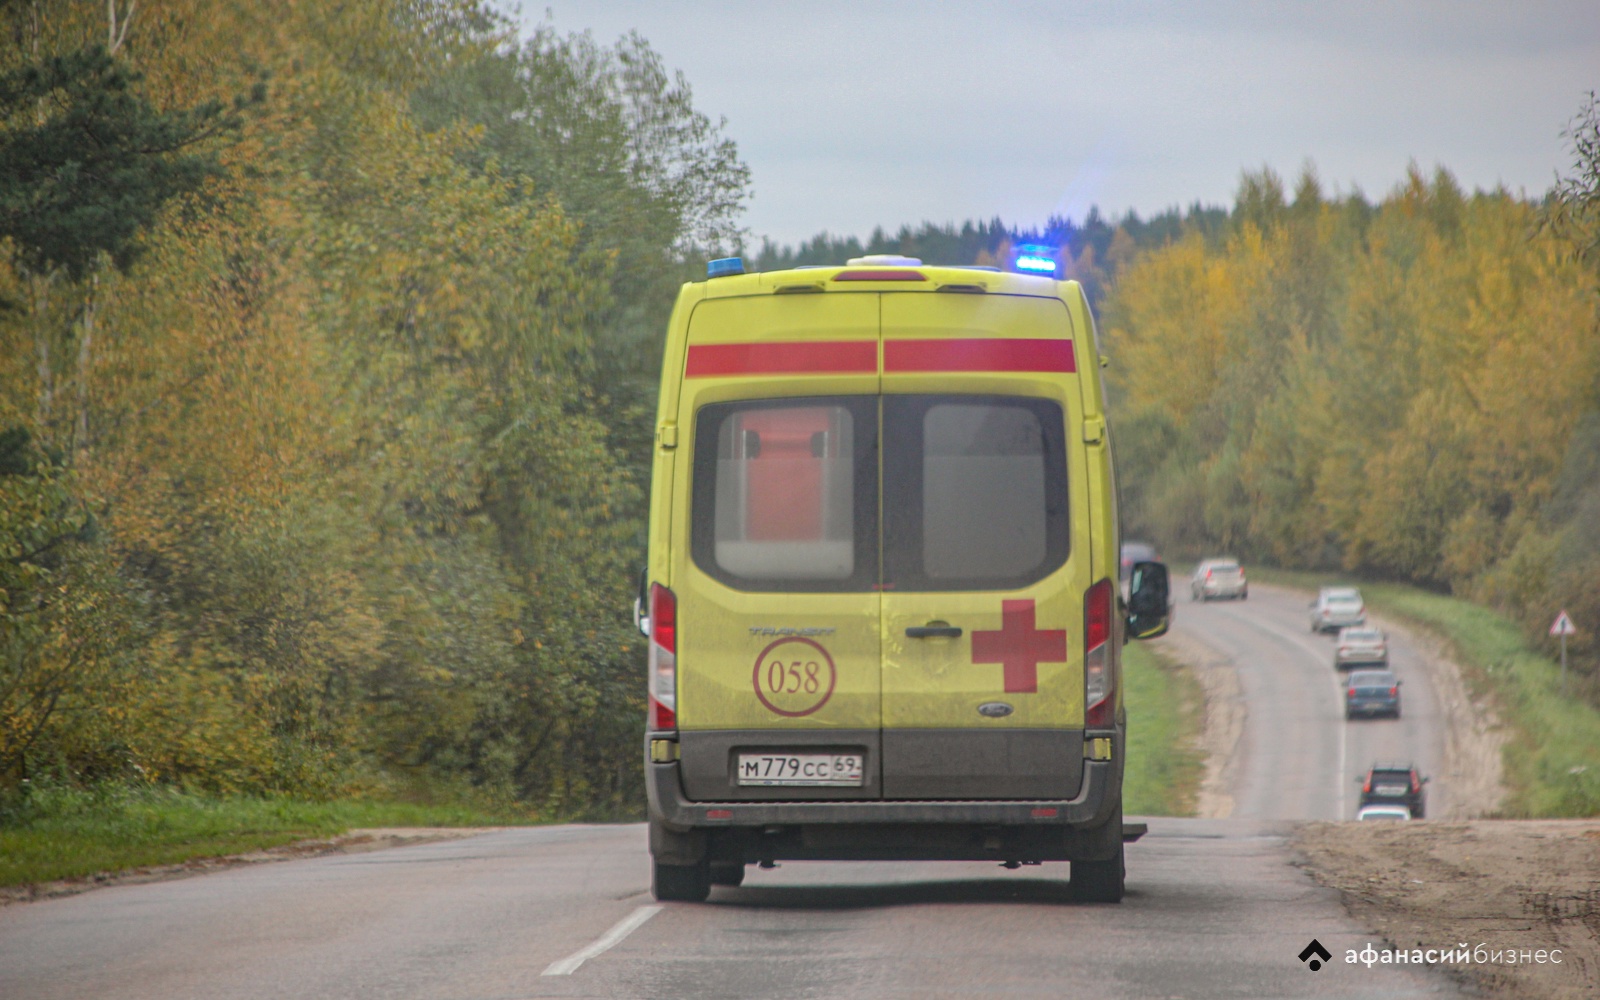 Ребенок пострадал в ДТП на дороге в Тверской области - новости Афанасий